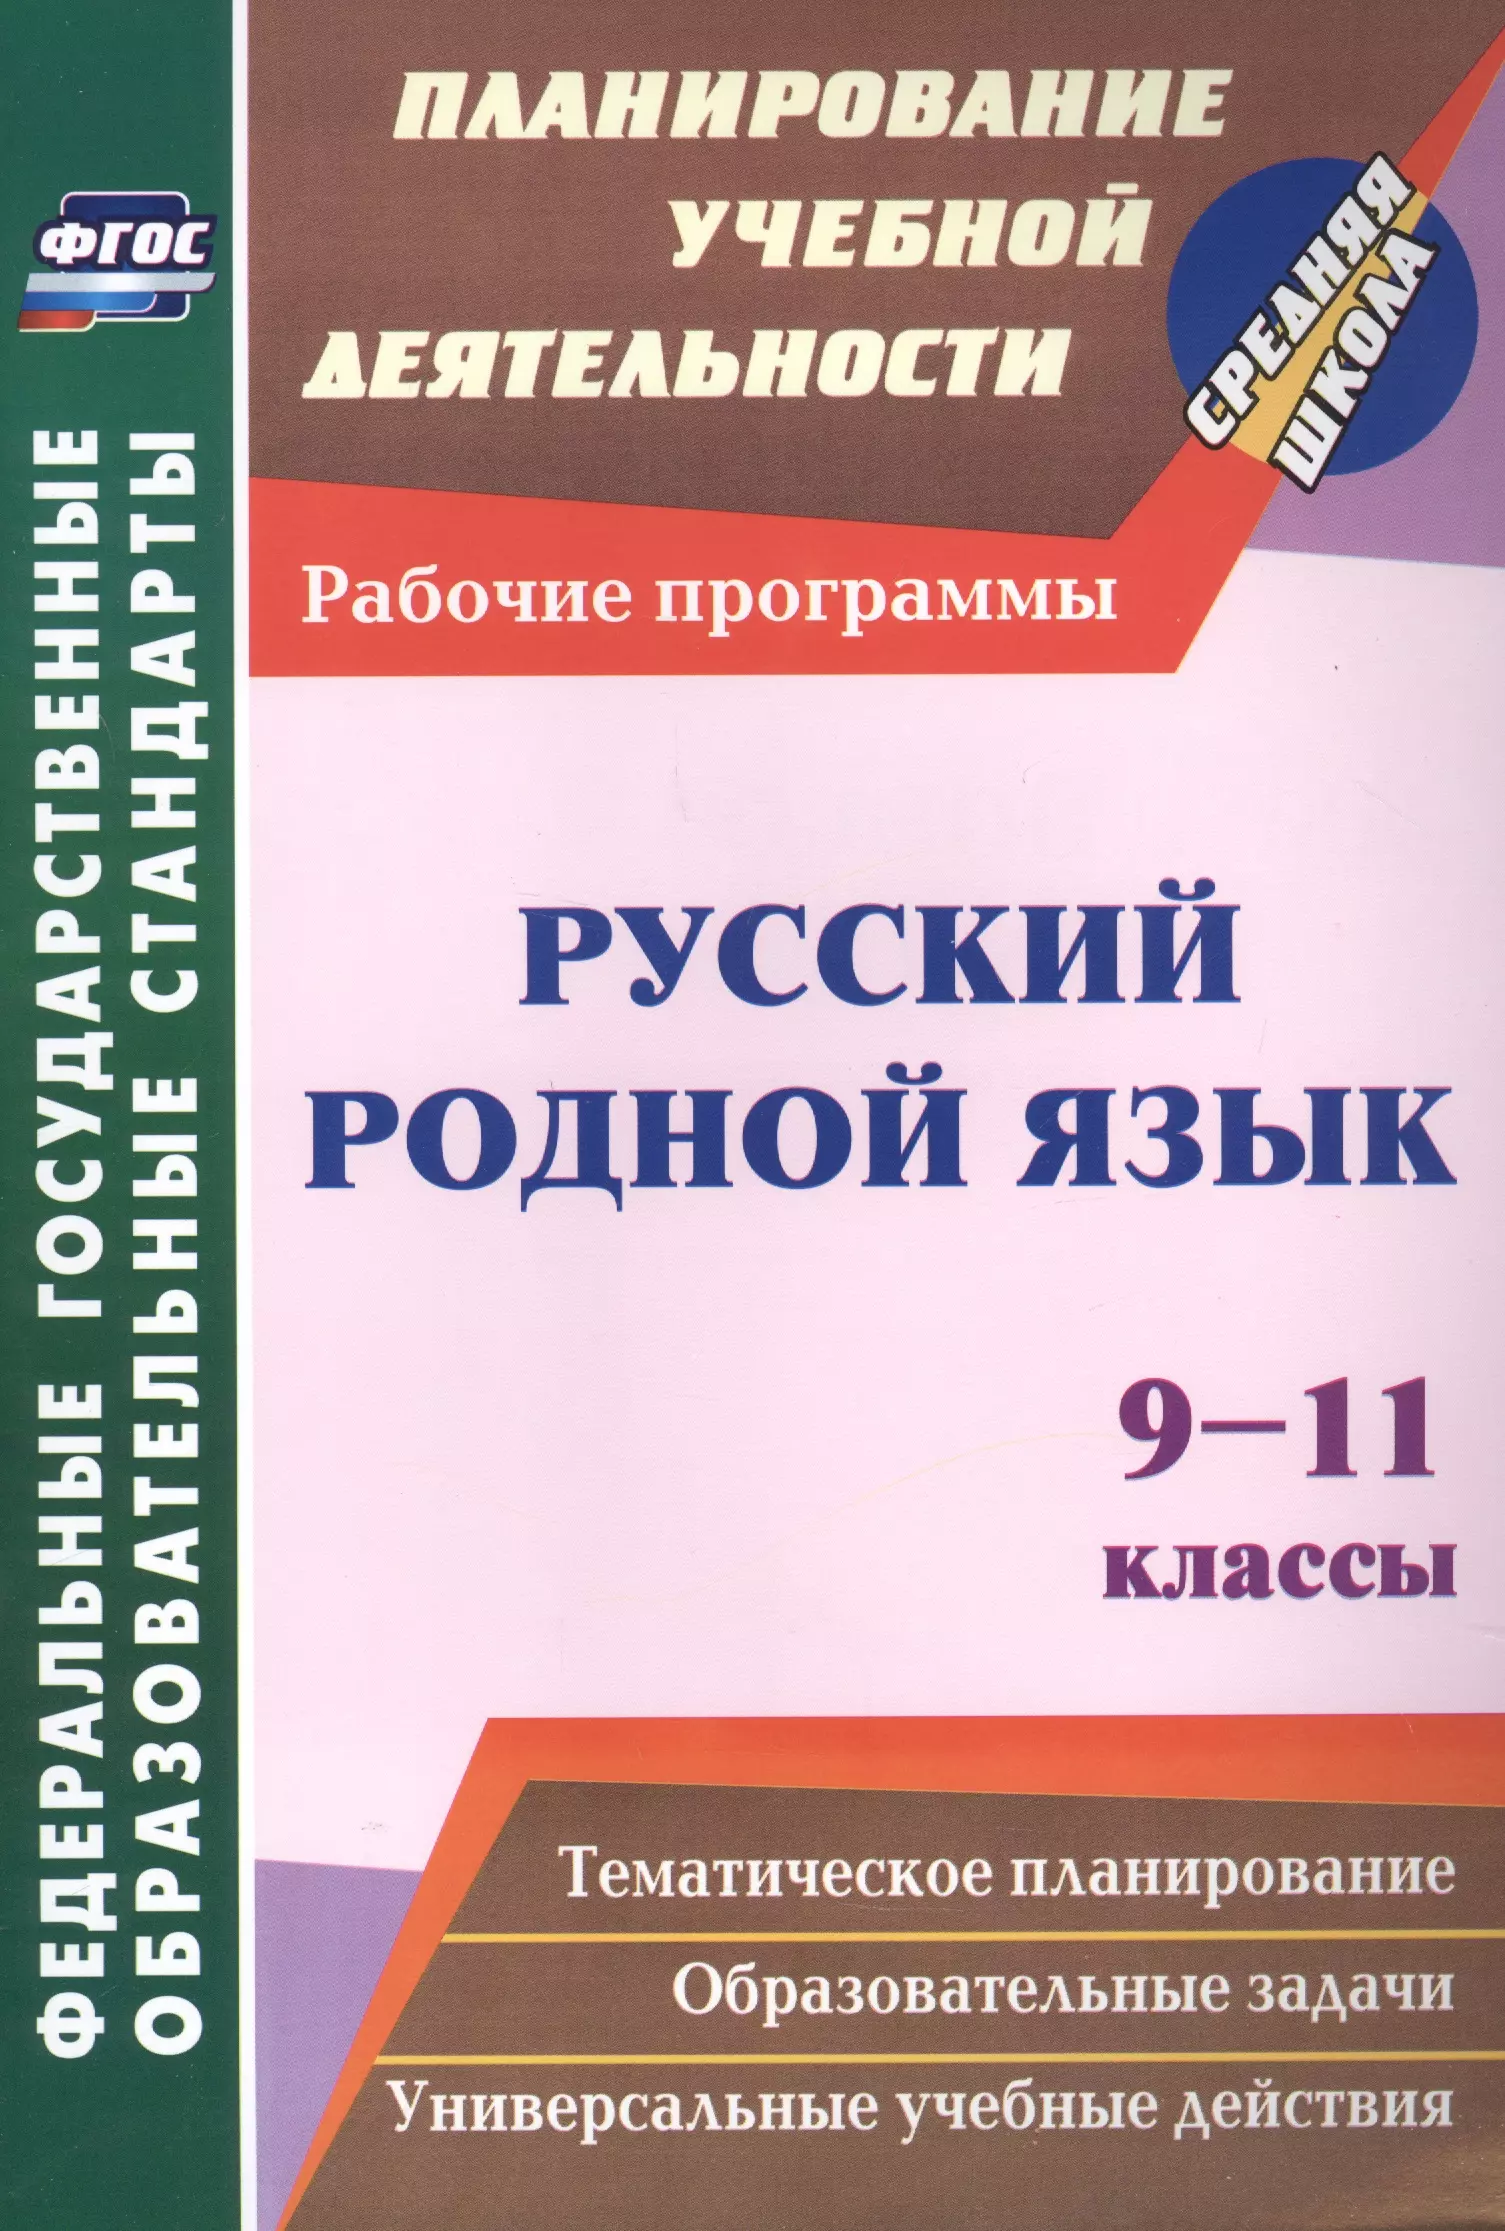 Русский родной язык. 9-11 классы: рабочие программы. русский язык 5 9 классы 10 11 классы программы